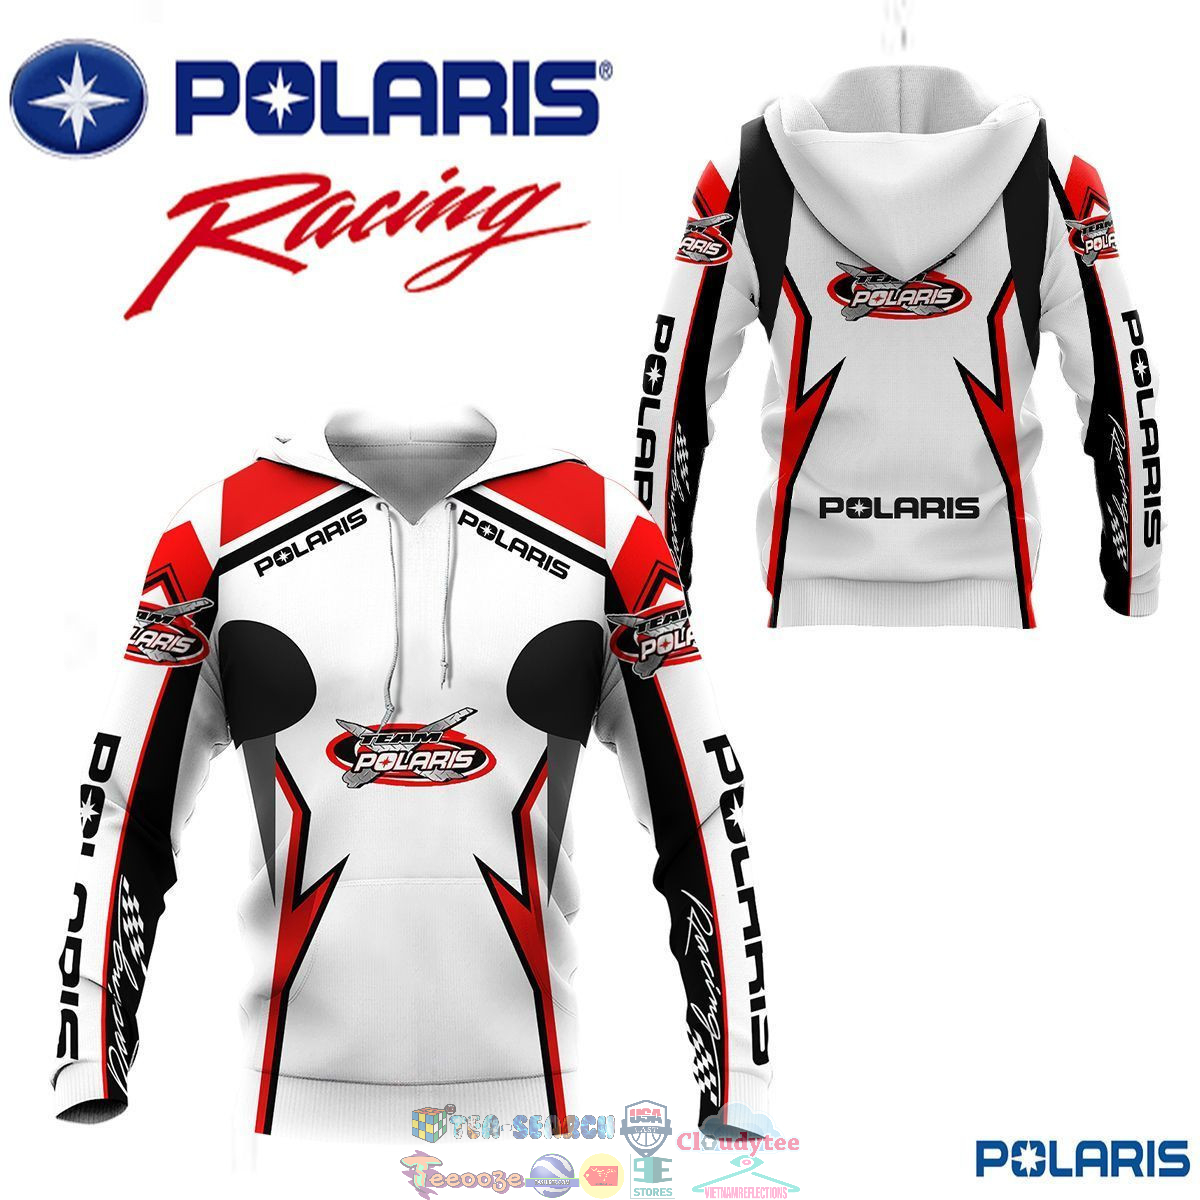 Polaris Racing Team ver 9 3D hoodie and t-shirt